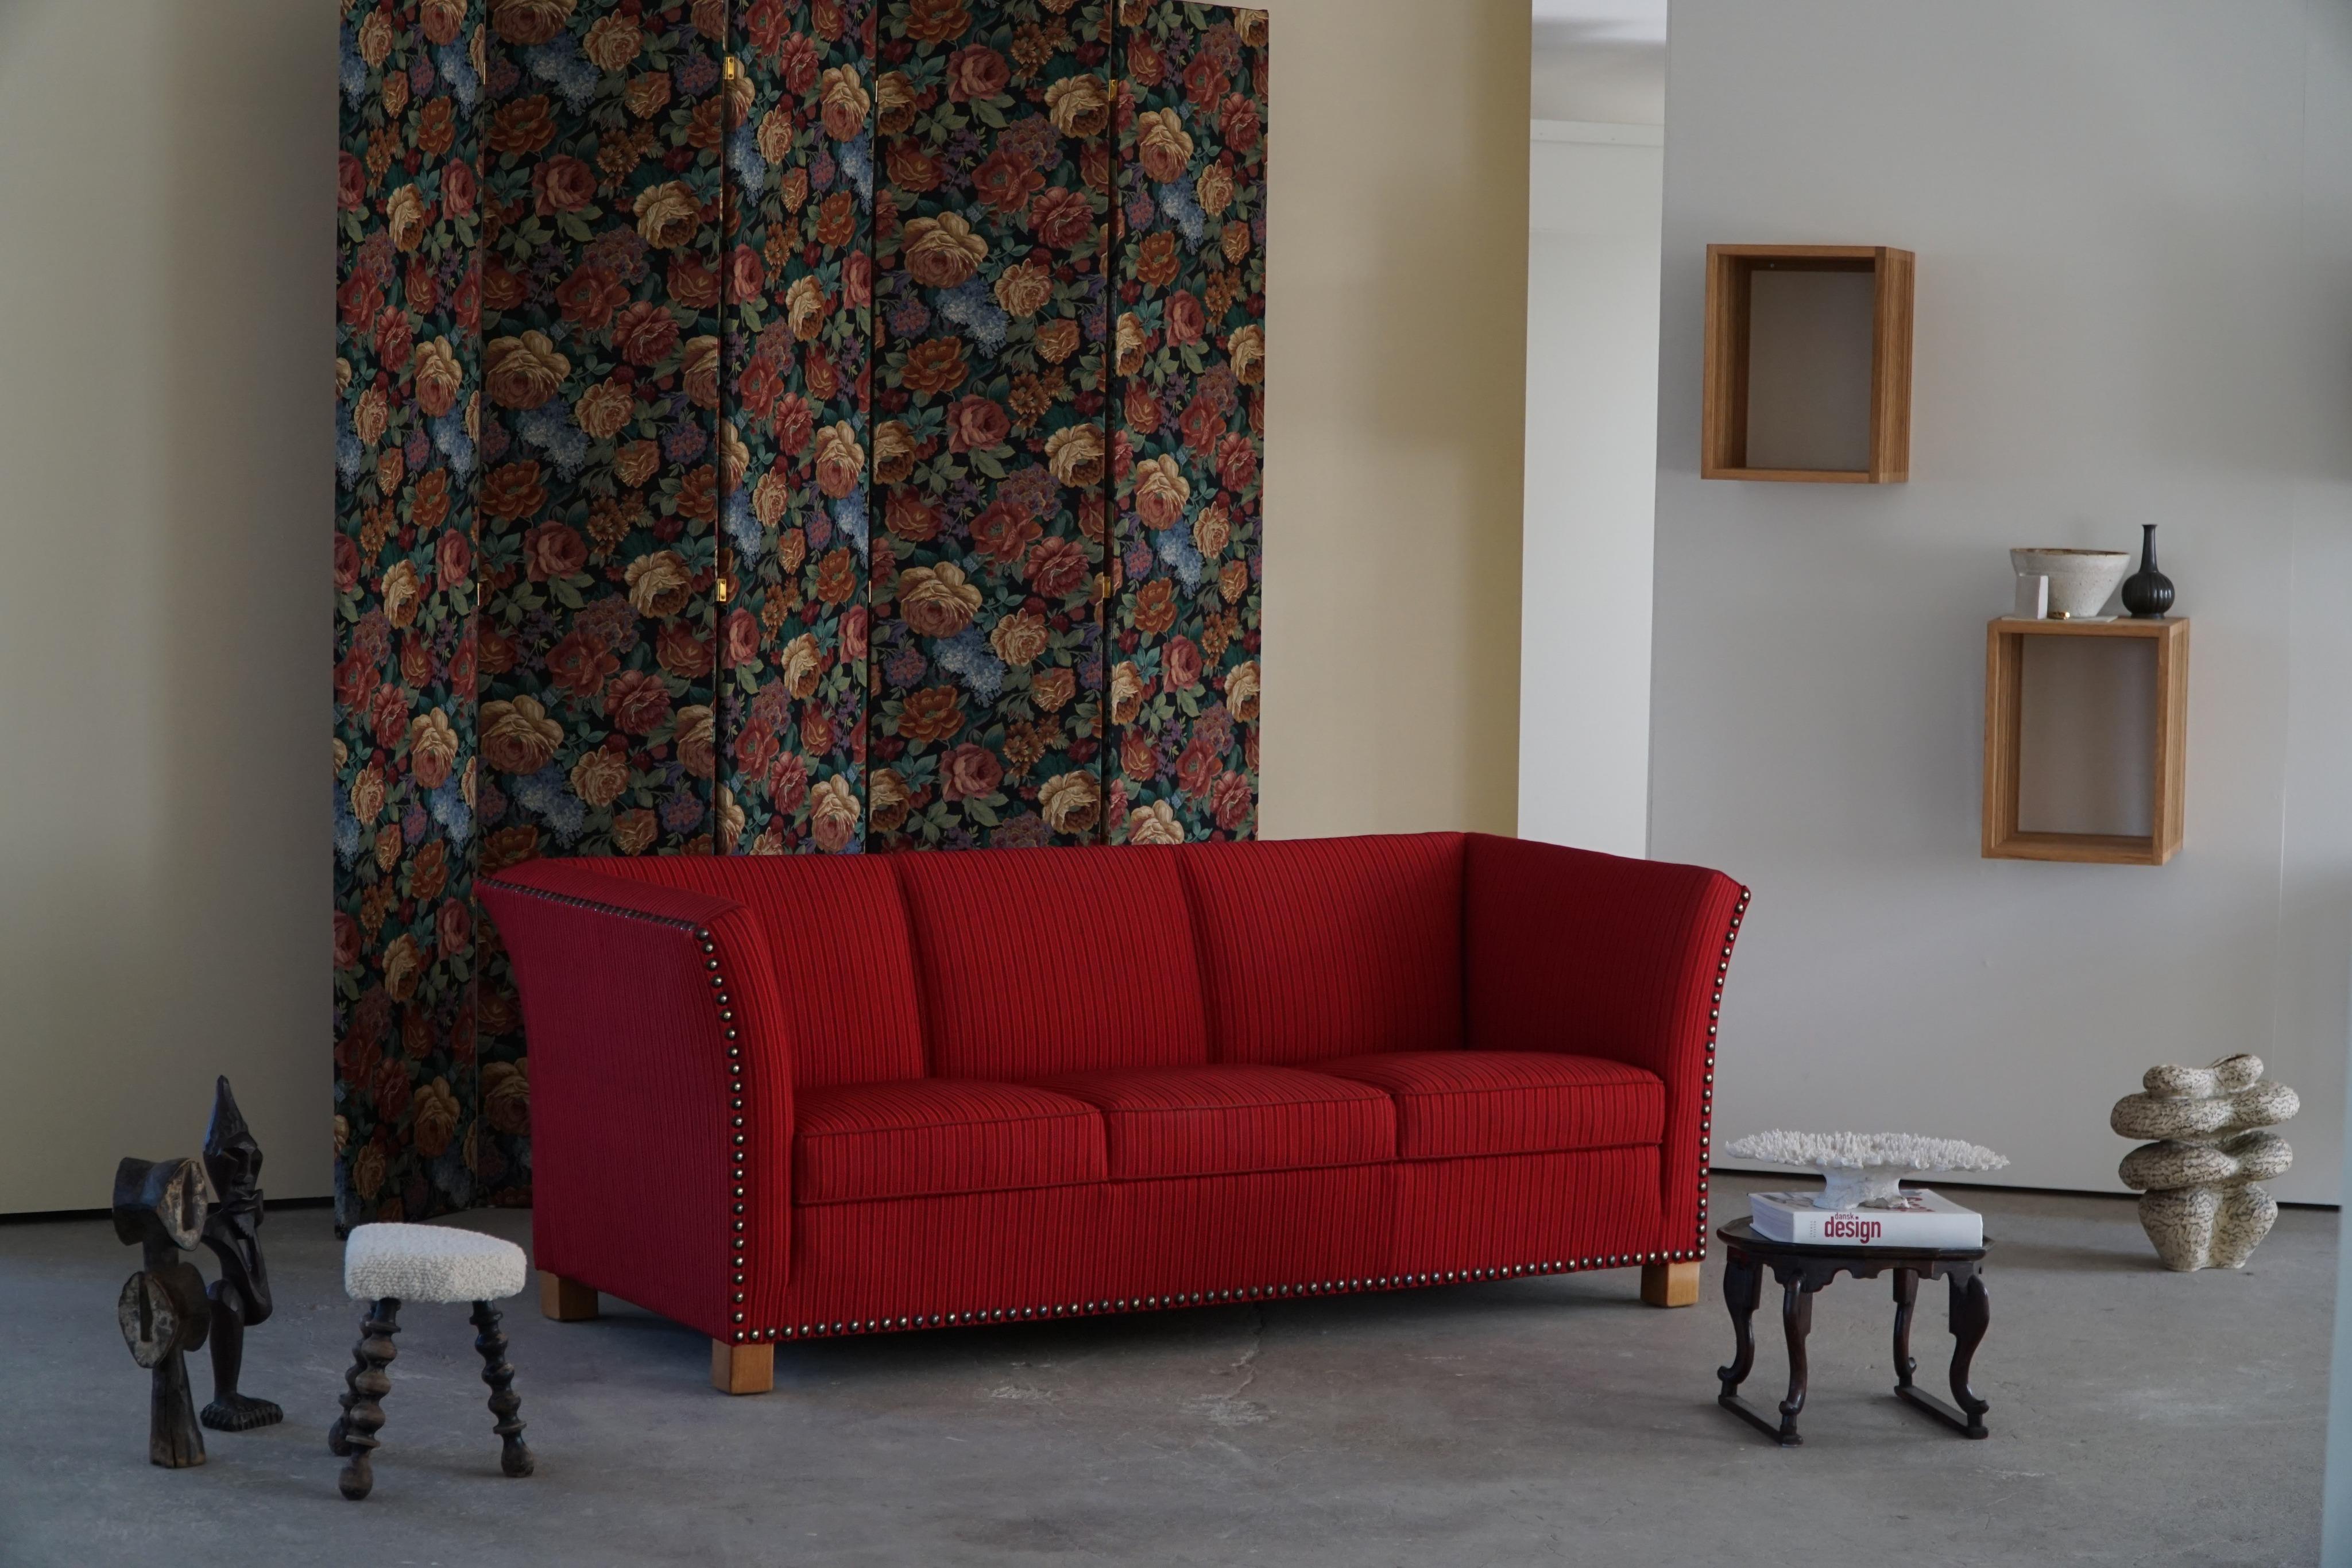 Un rare et vraiment étonnant canapé trois places dans le style de Flemming Lassen. Fabriqué par un ébéniste danois dans les années 1940. L'impression générale de ce canapé est vraiment bonne, toujours avec le tissu vintage d'origine.

Un design